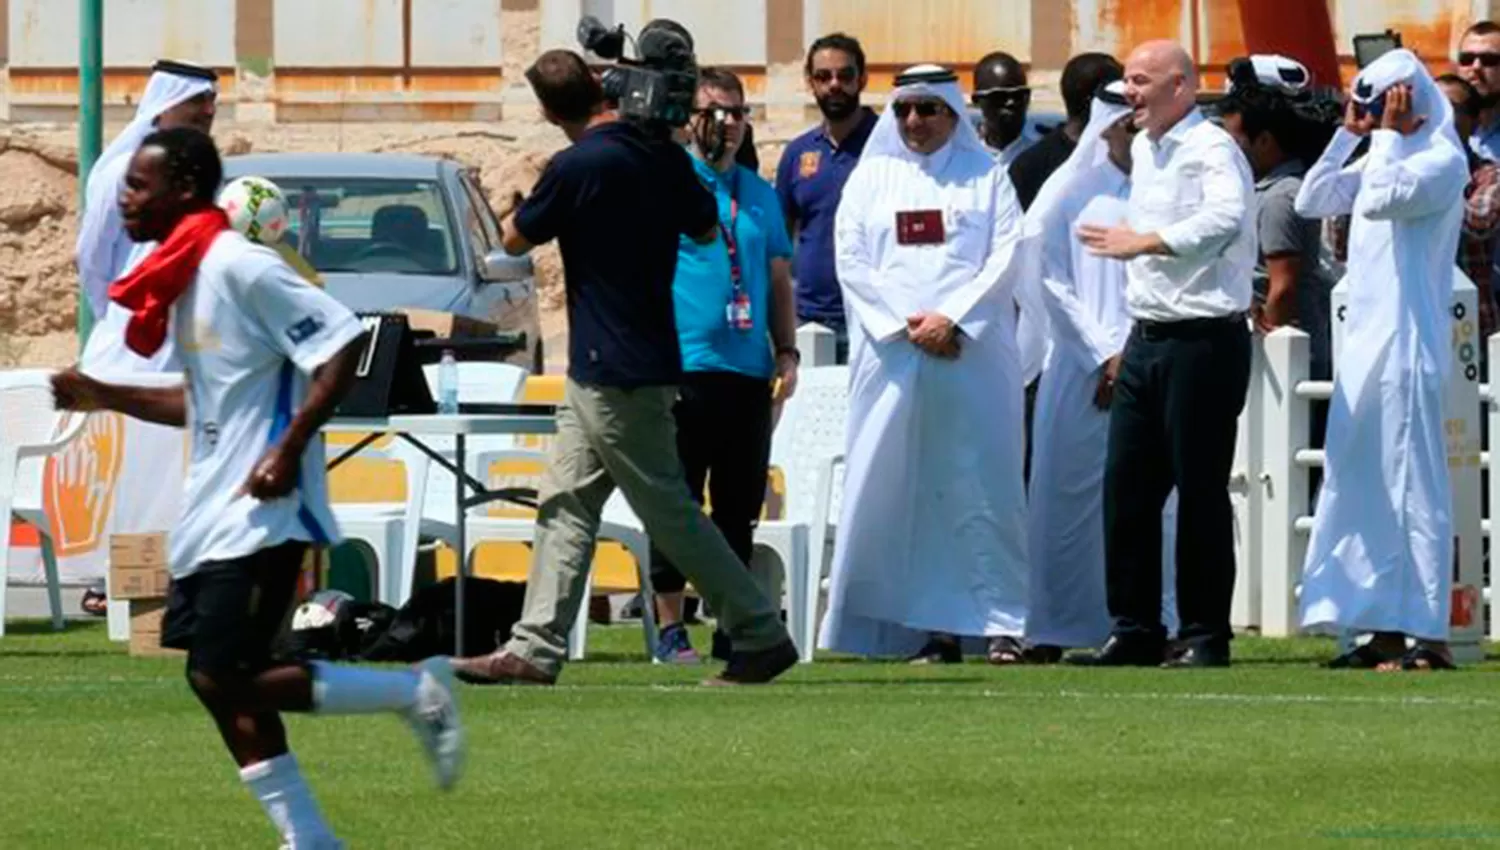 Infantino visitó Qatar en abril. Operarios que trabajan en los estadios denunciaron a los organizadores por abusos flagrantes.
FOTO TOMADA DE www.rpctv.com